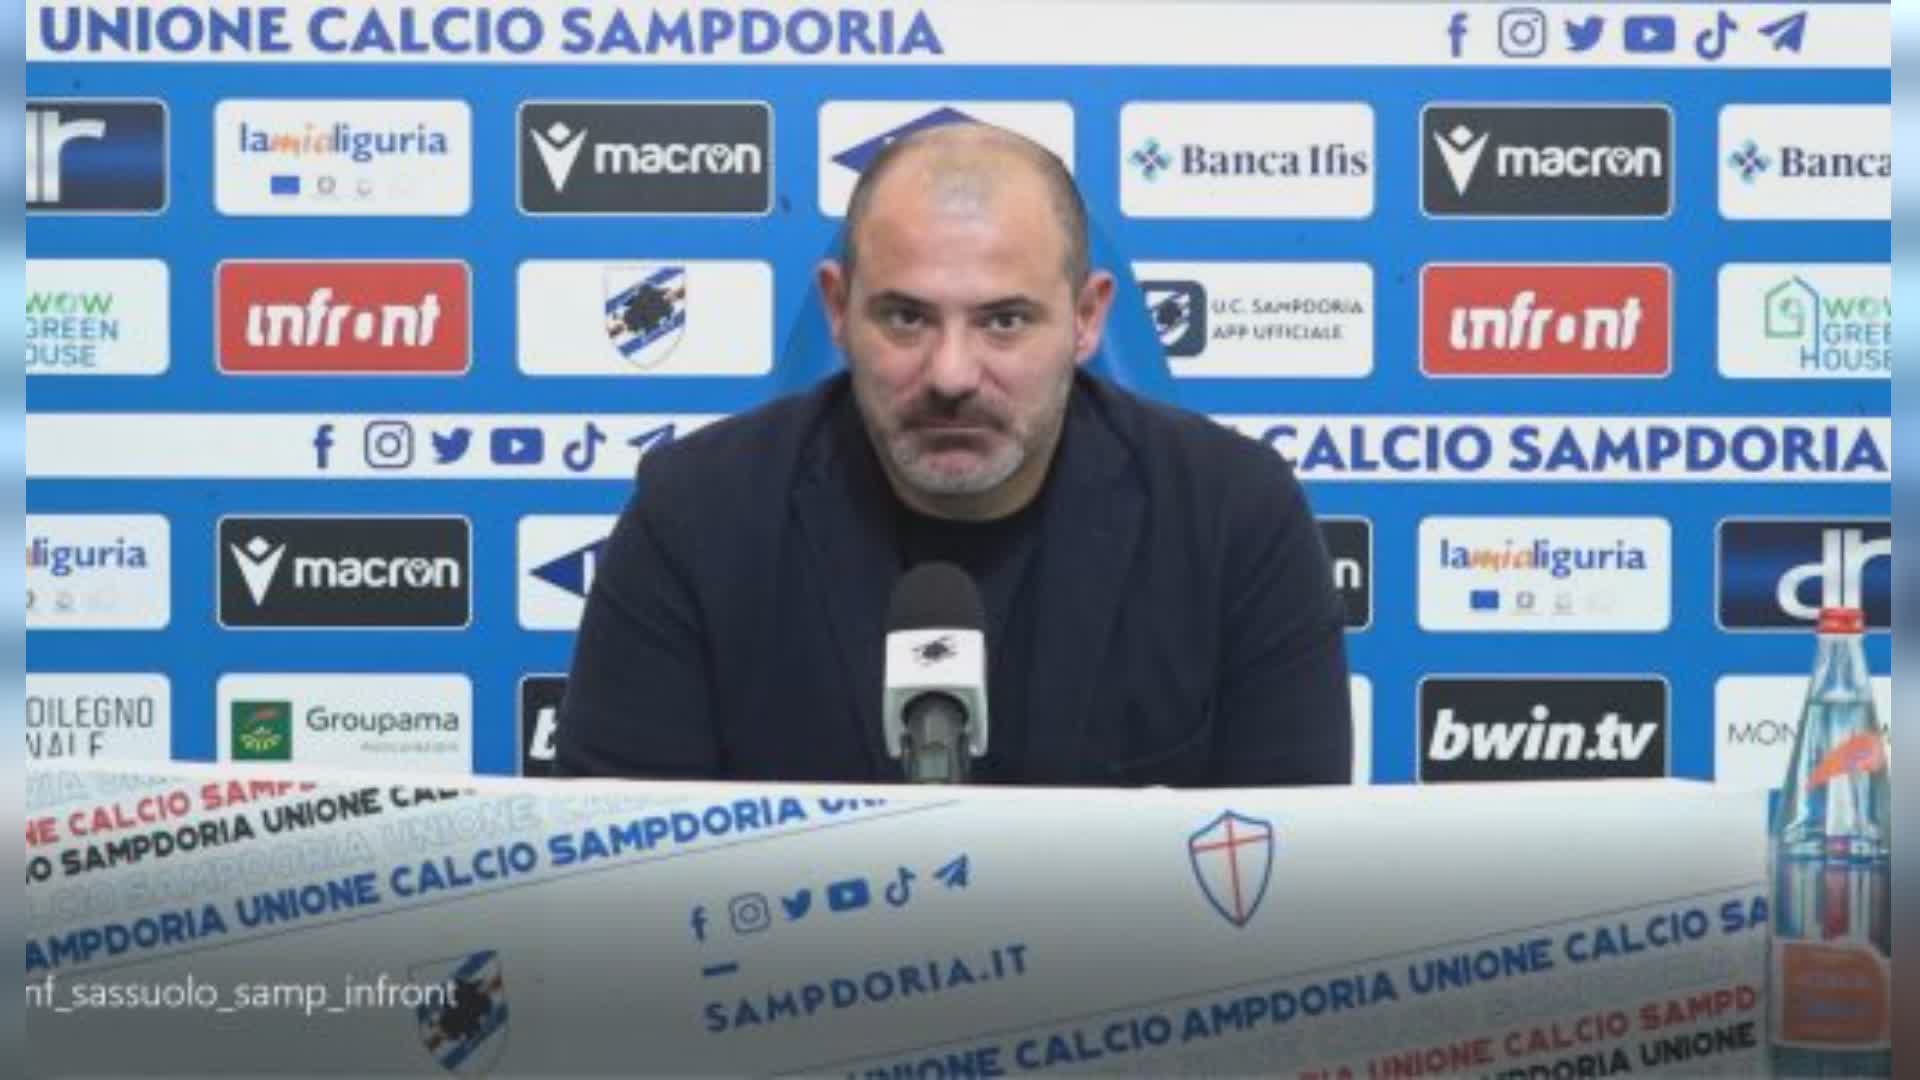 Napoli-Sampdoria 2-0, Stankovic: questa è la mia ultima partita in blucerchiato